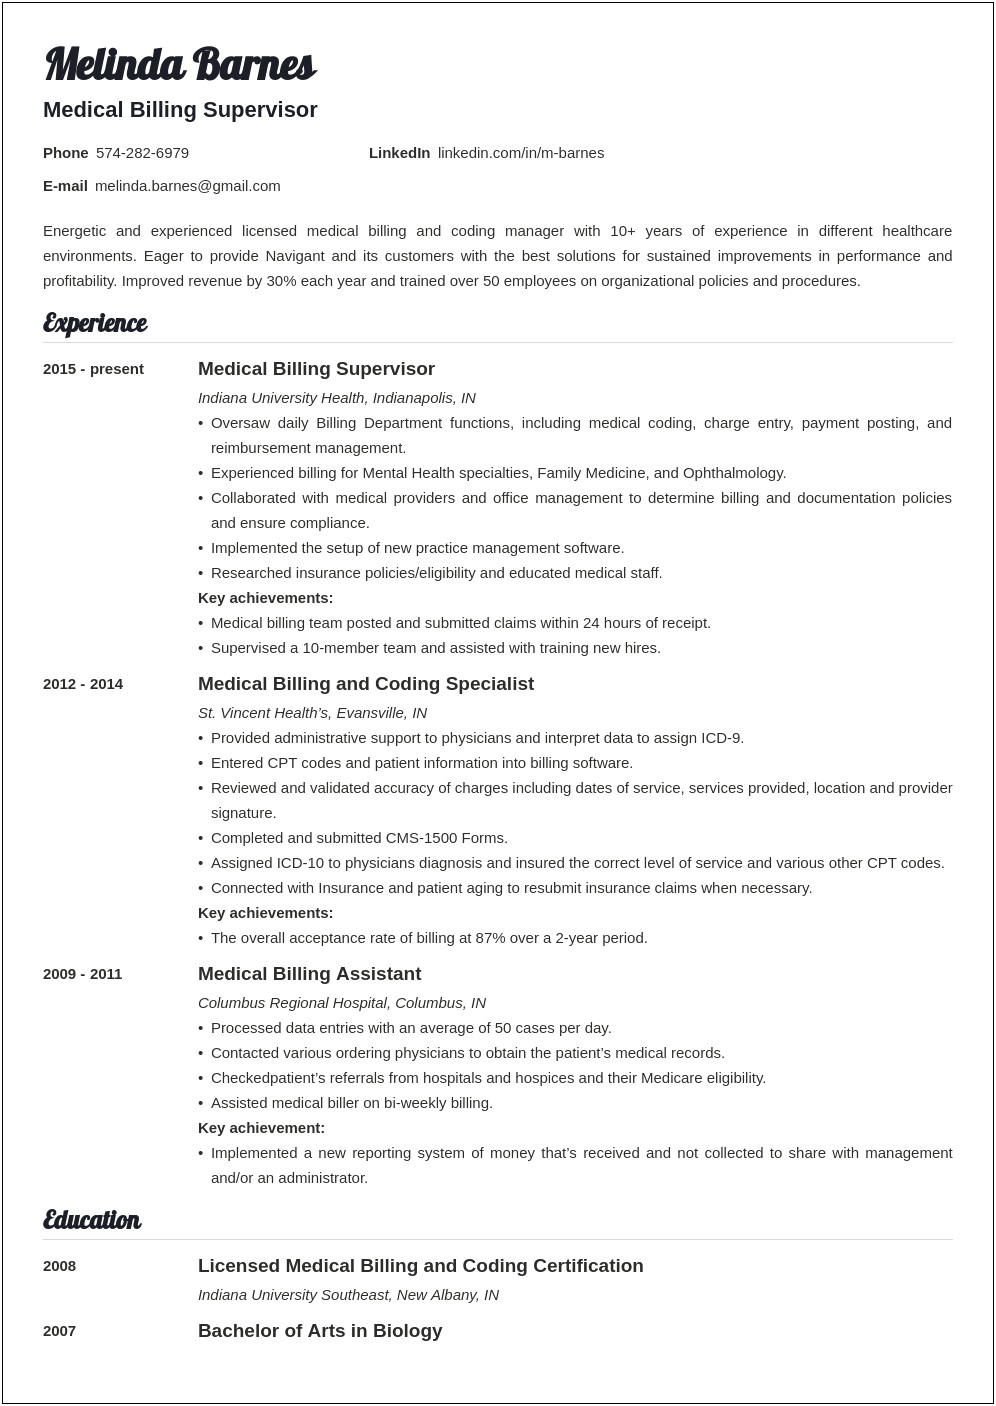 Resume Objective For Medical Billing Position